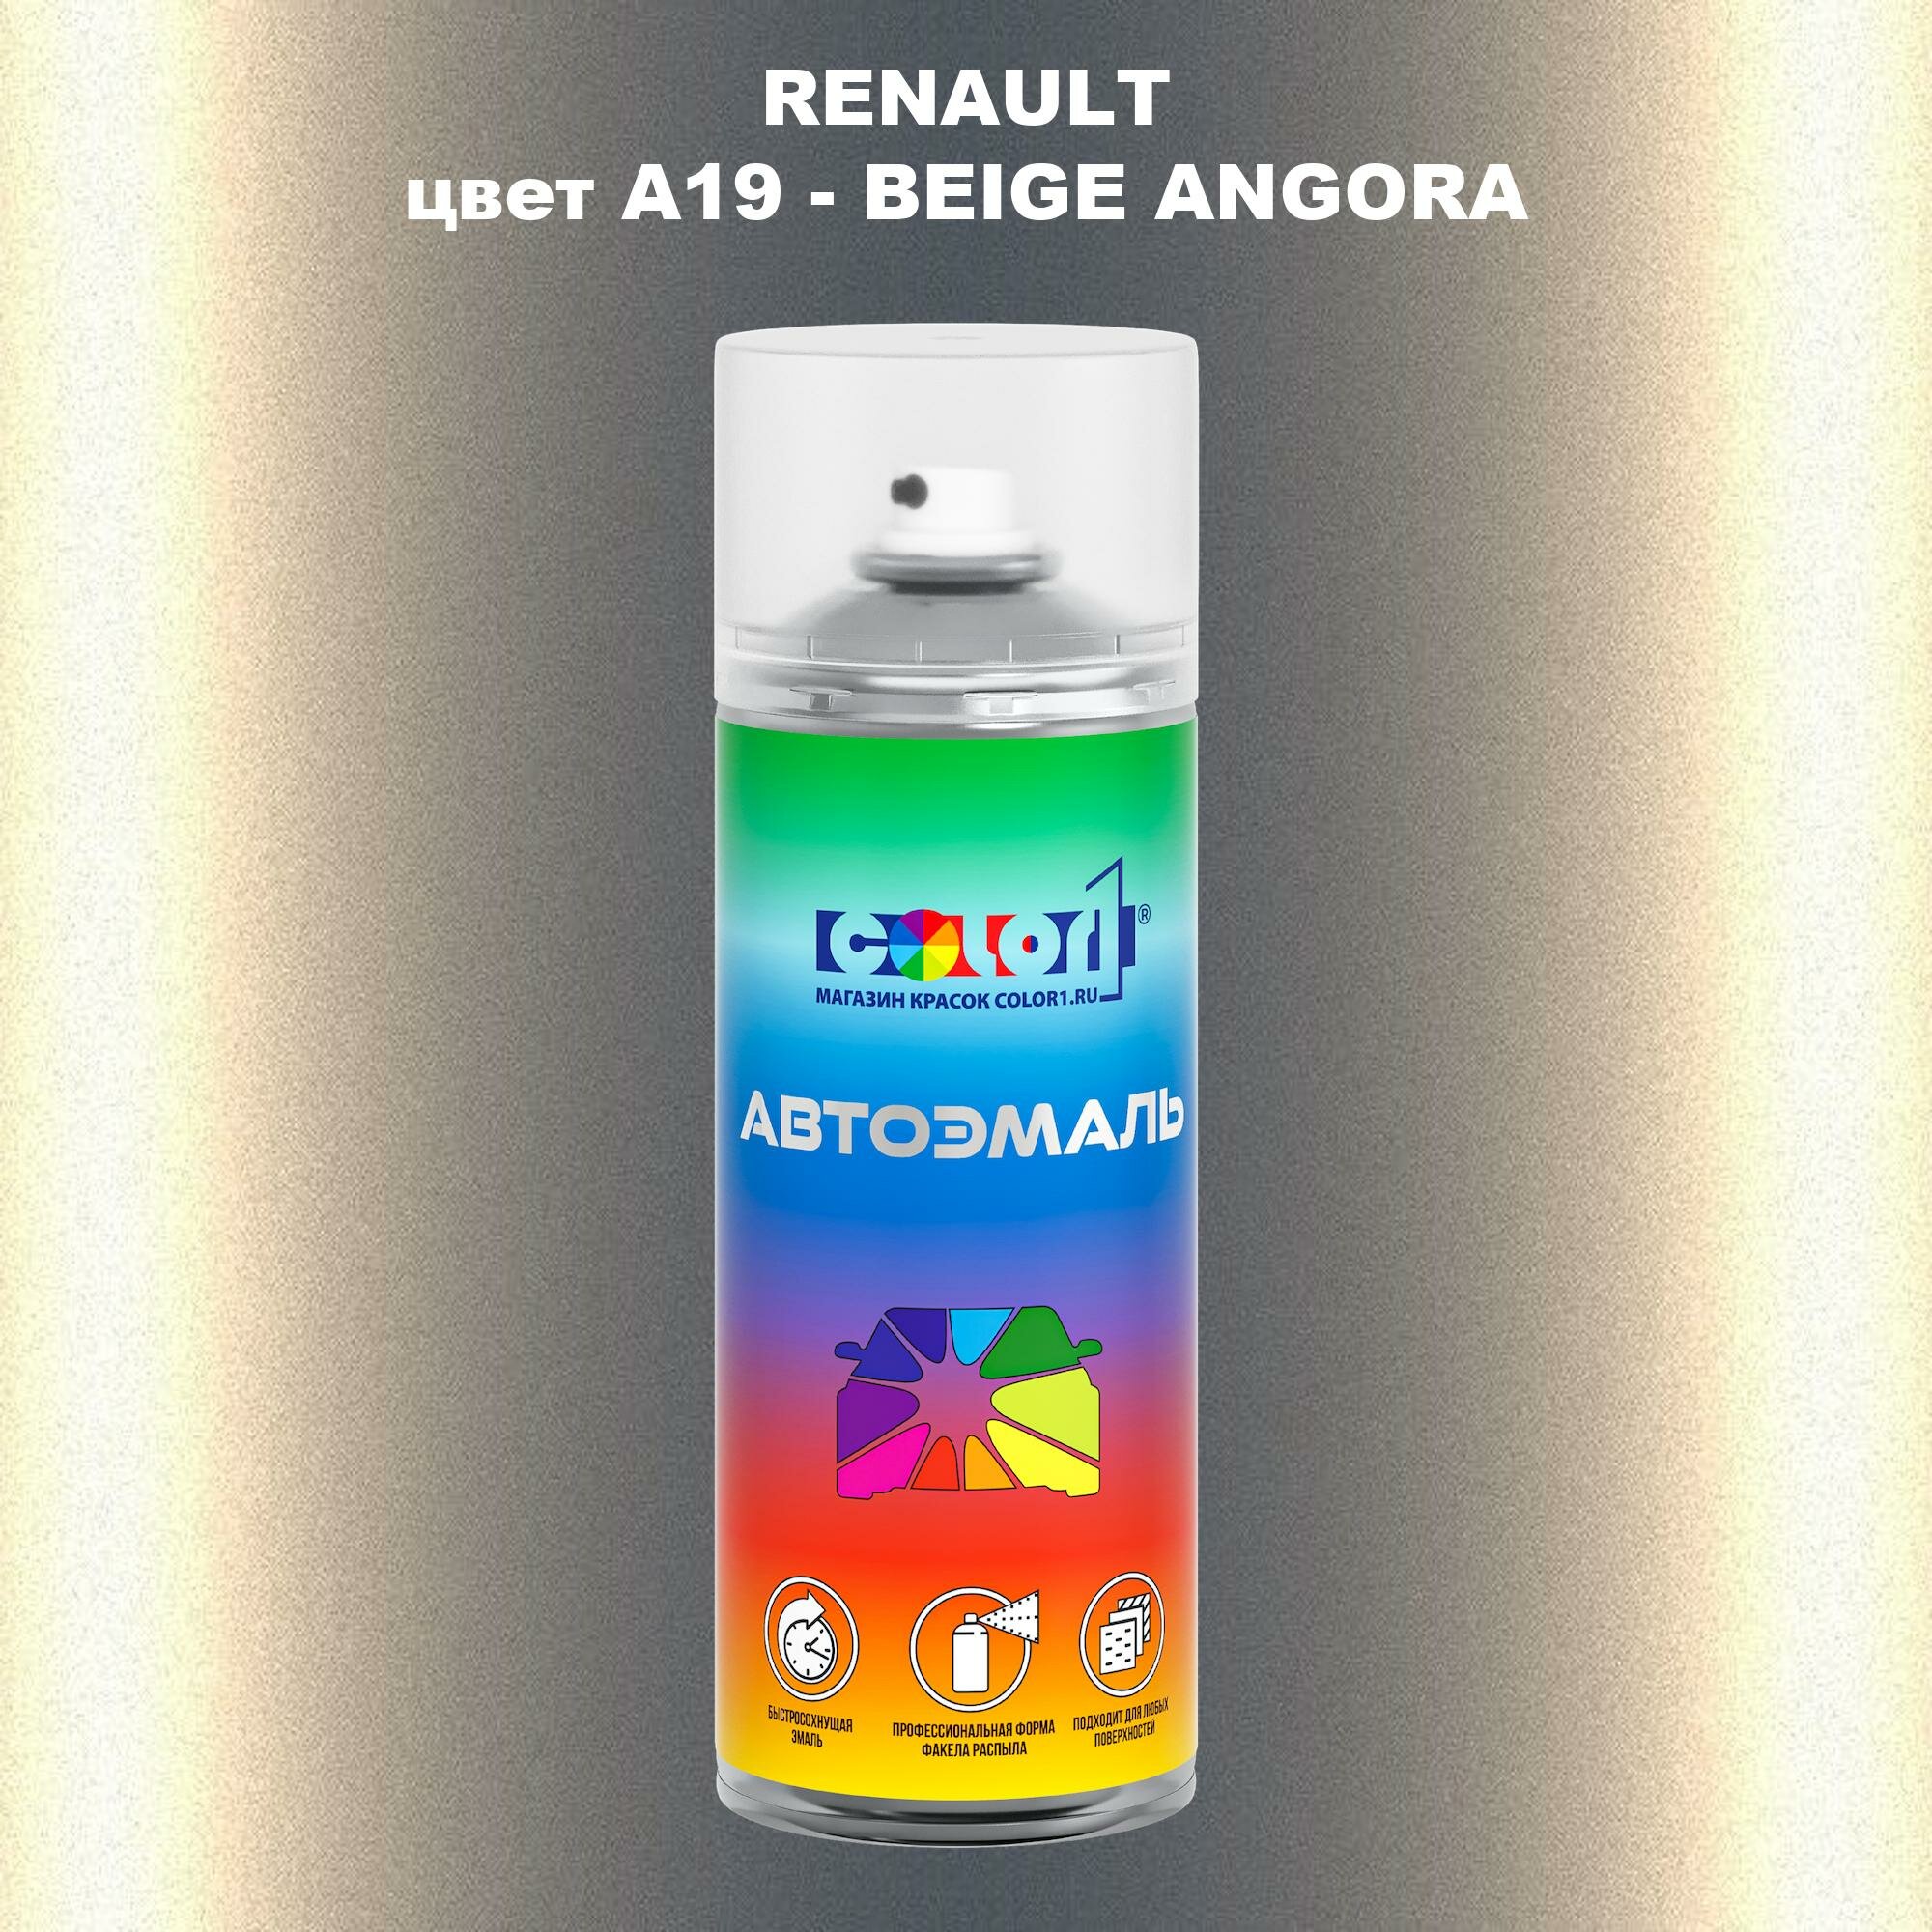 Аэрозольная краска COLOR1 для RENAULT, цвет A19 - BEIGE ANGORA